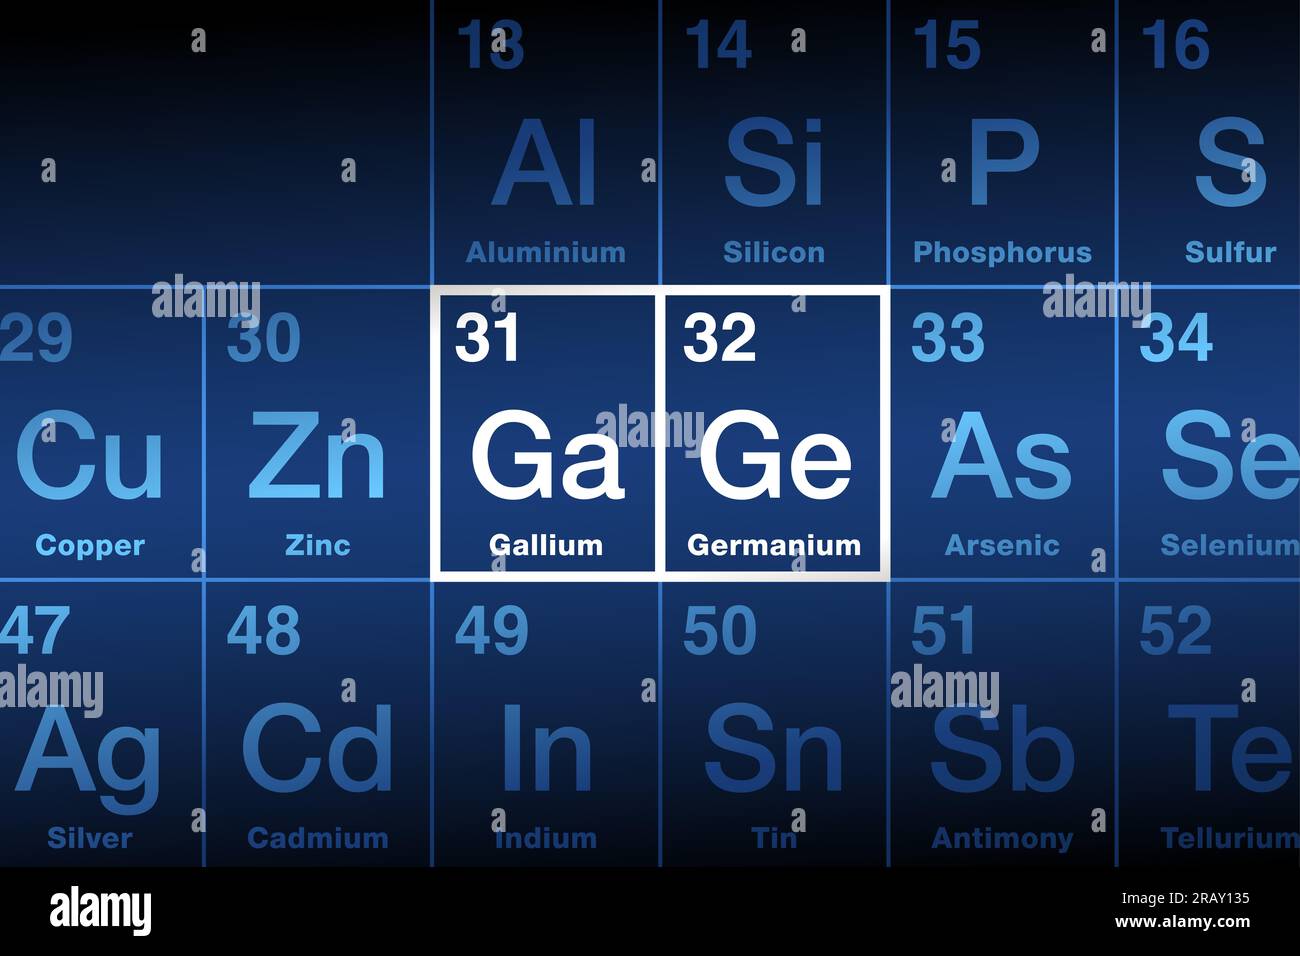 Gallium et germanium sur la table périodique des éléments. Gallium (GA), un métal, germanium (GE), un métalloïde. Matériaux semi-conducteurs rares et importants. Banque D'Images